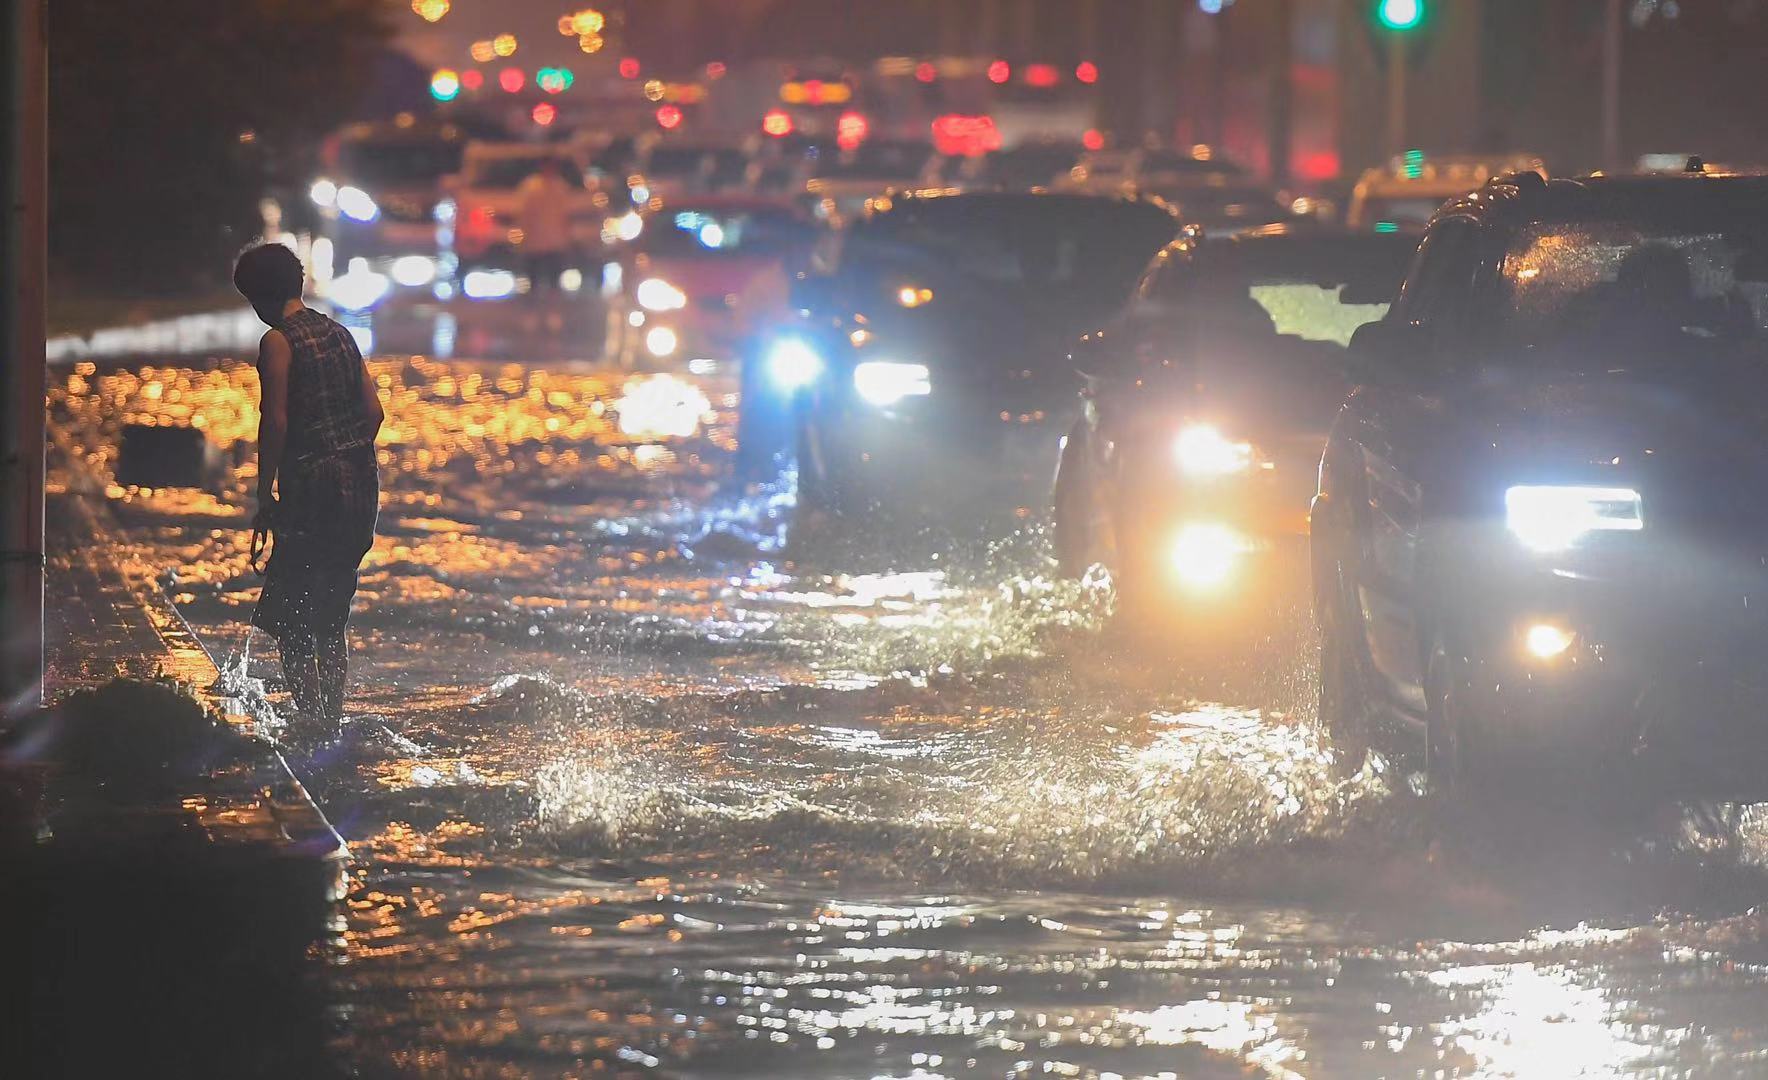 北京大雨金台路积水 抢险人员撬井盖排水|井盖|积水_新浪新闻